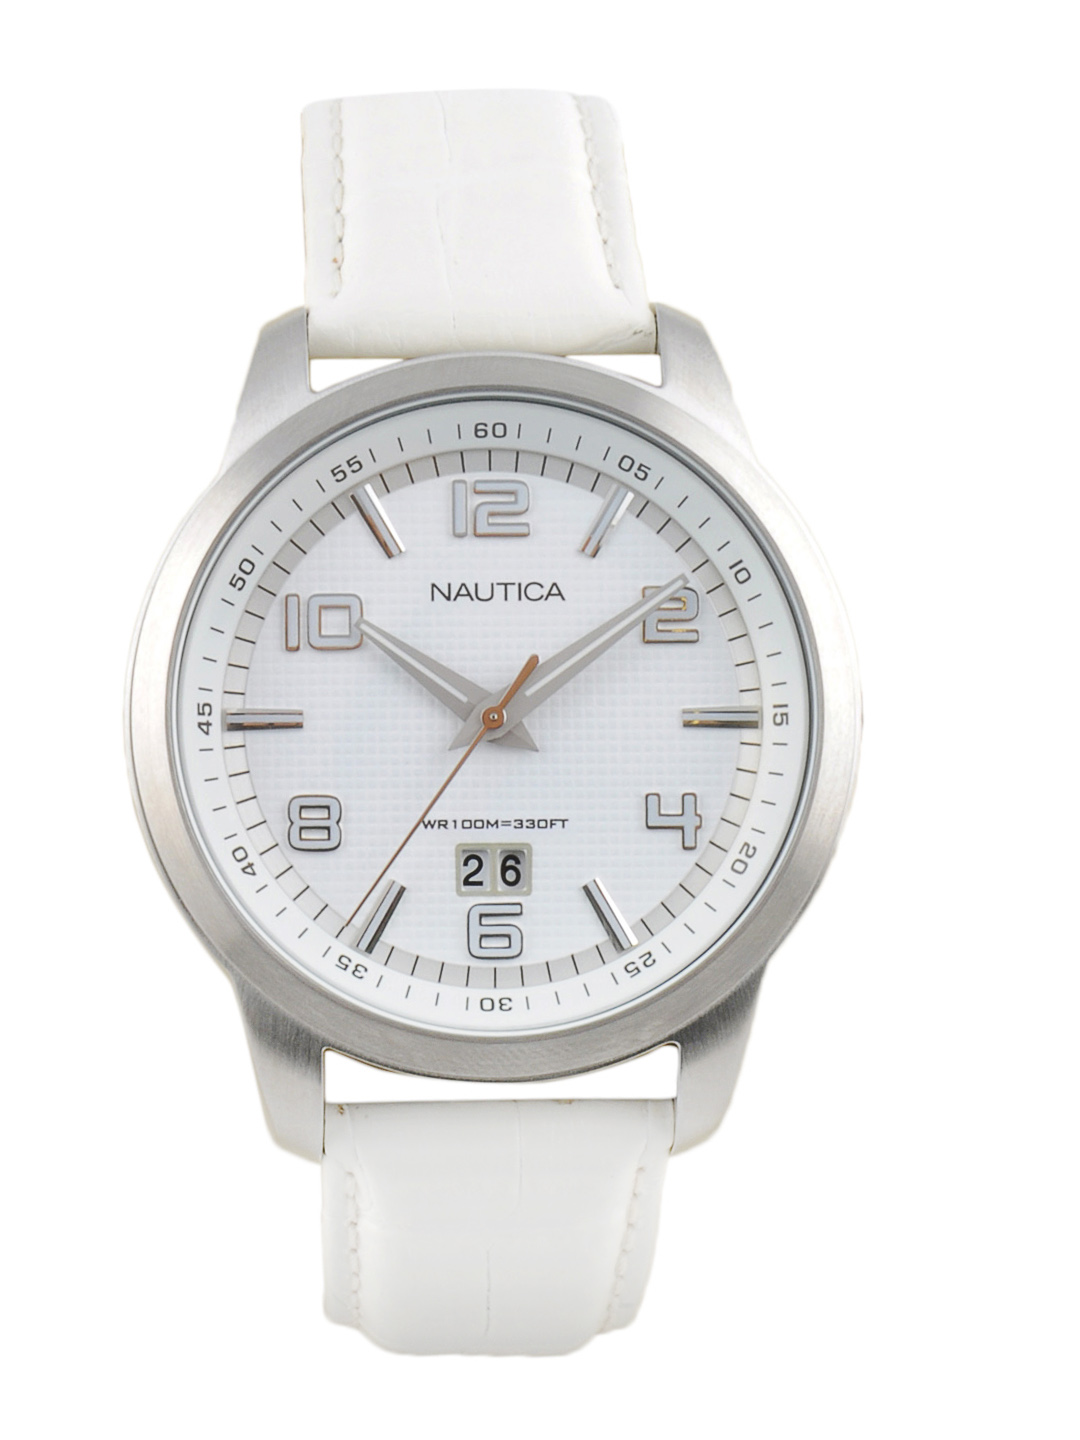 A White Watch